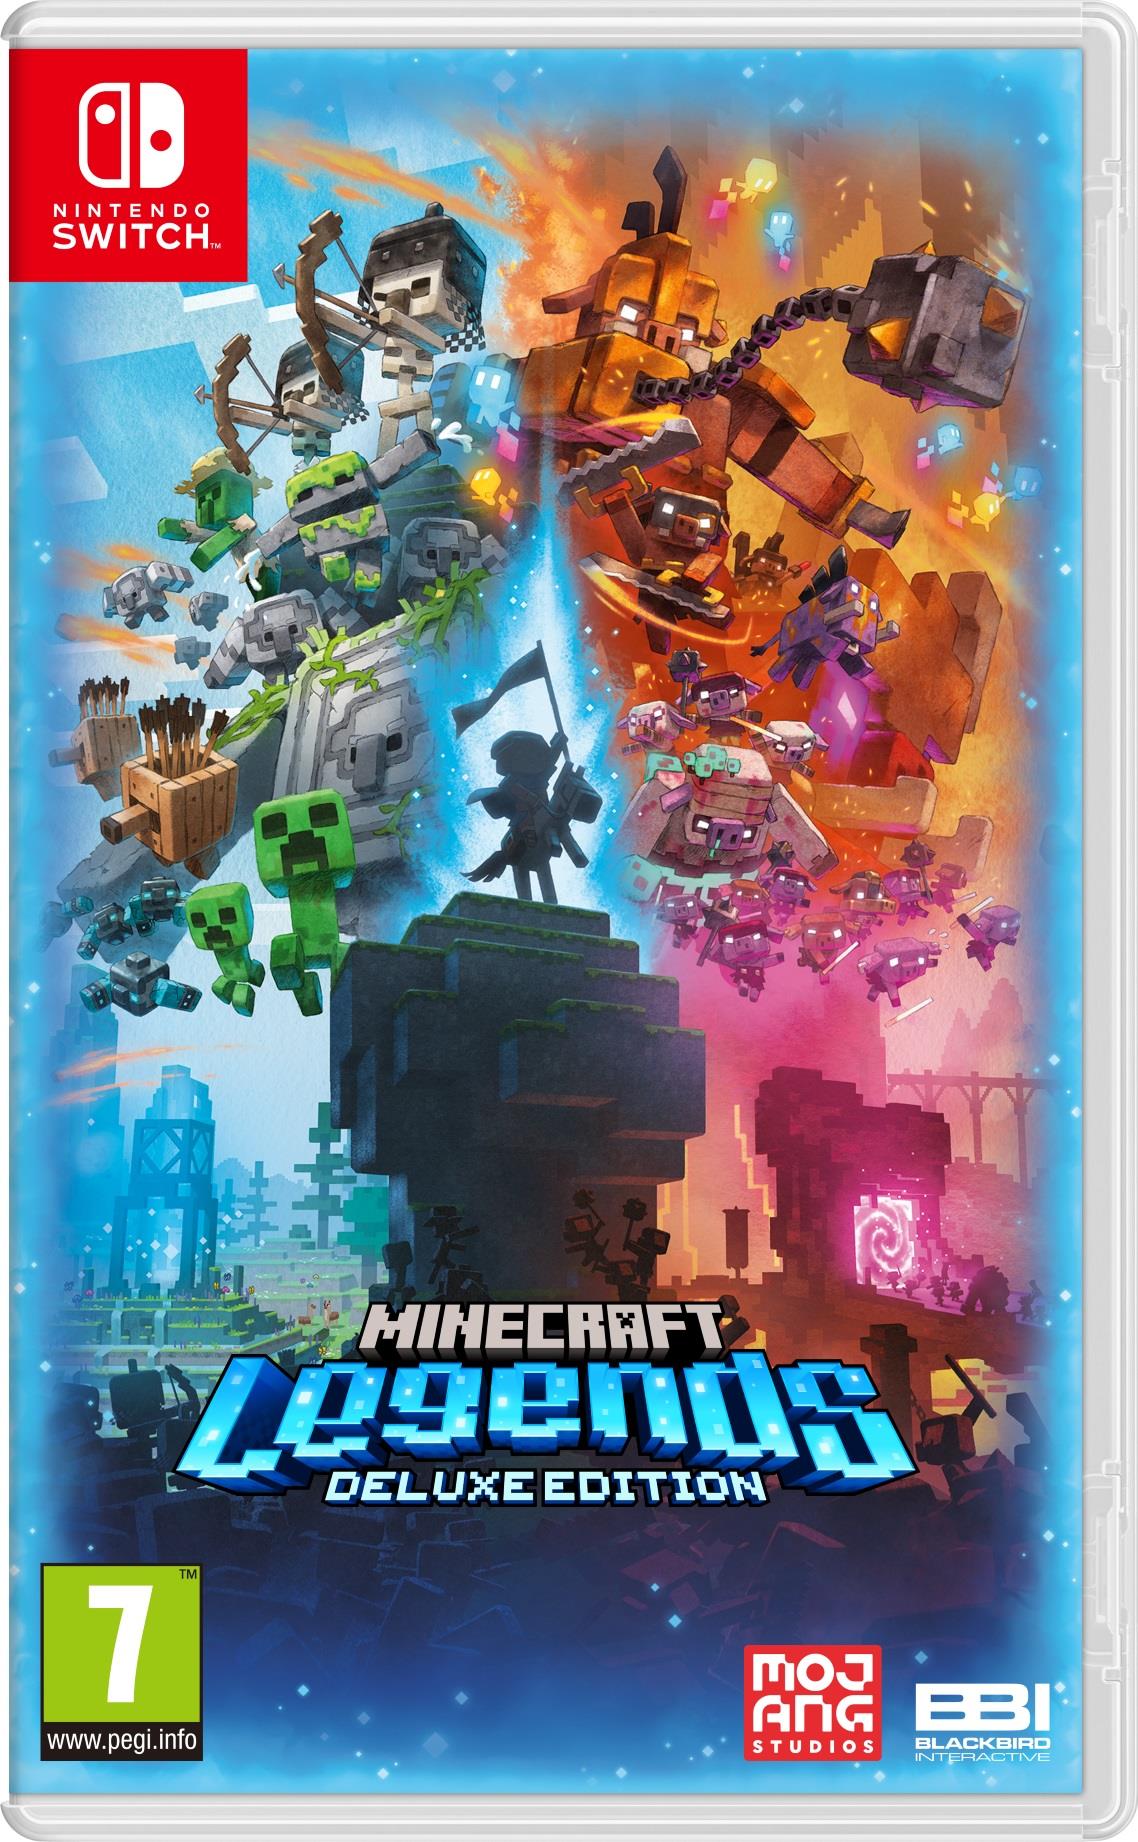 Nintendo Minecraft Legends Deluxe